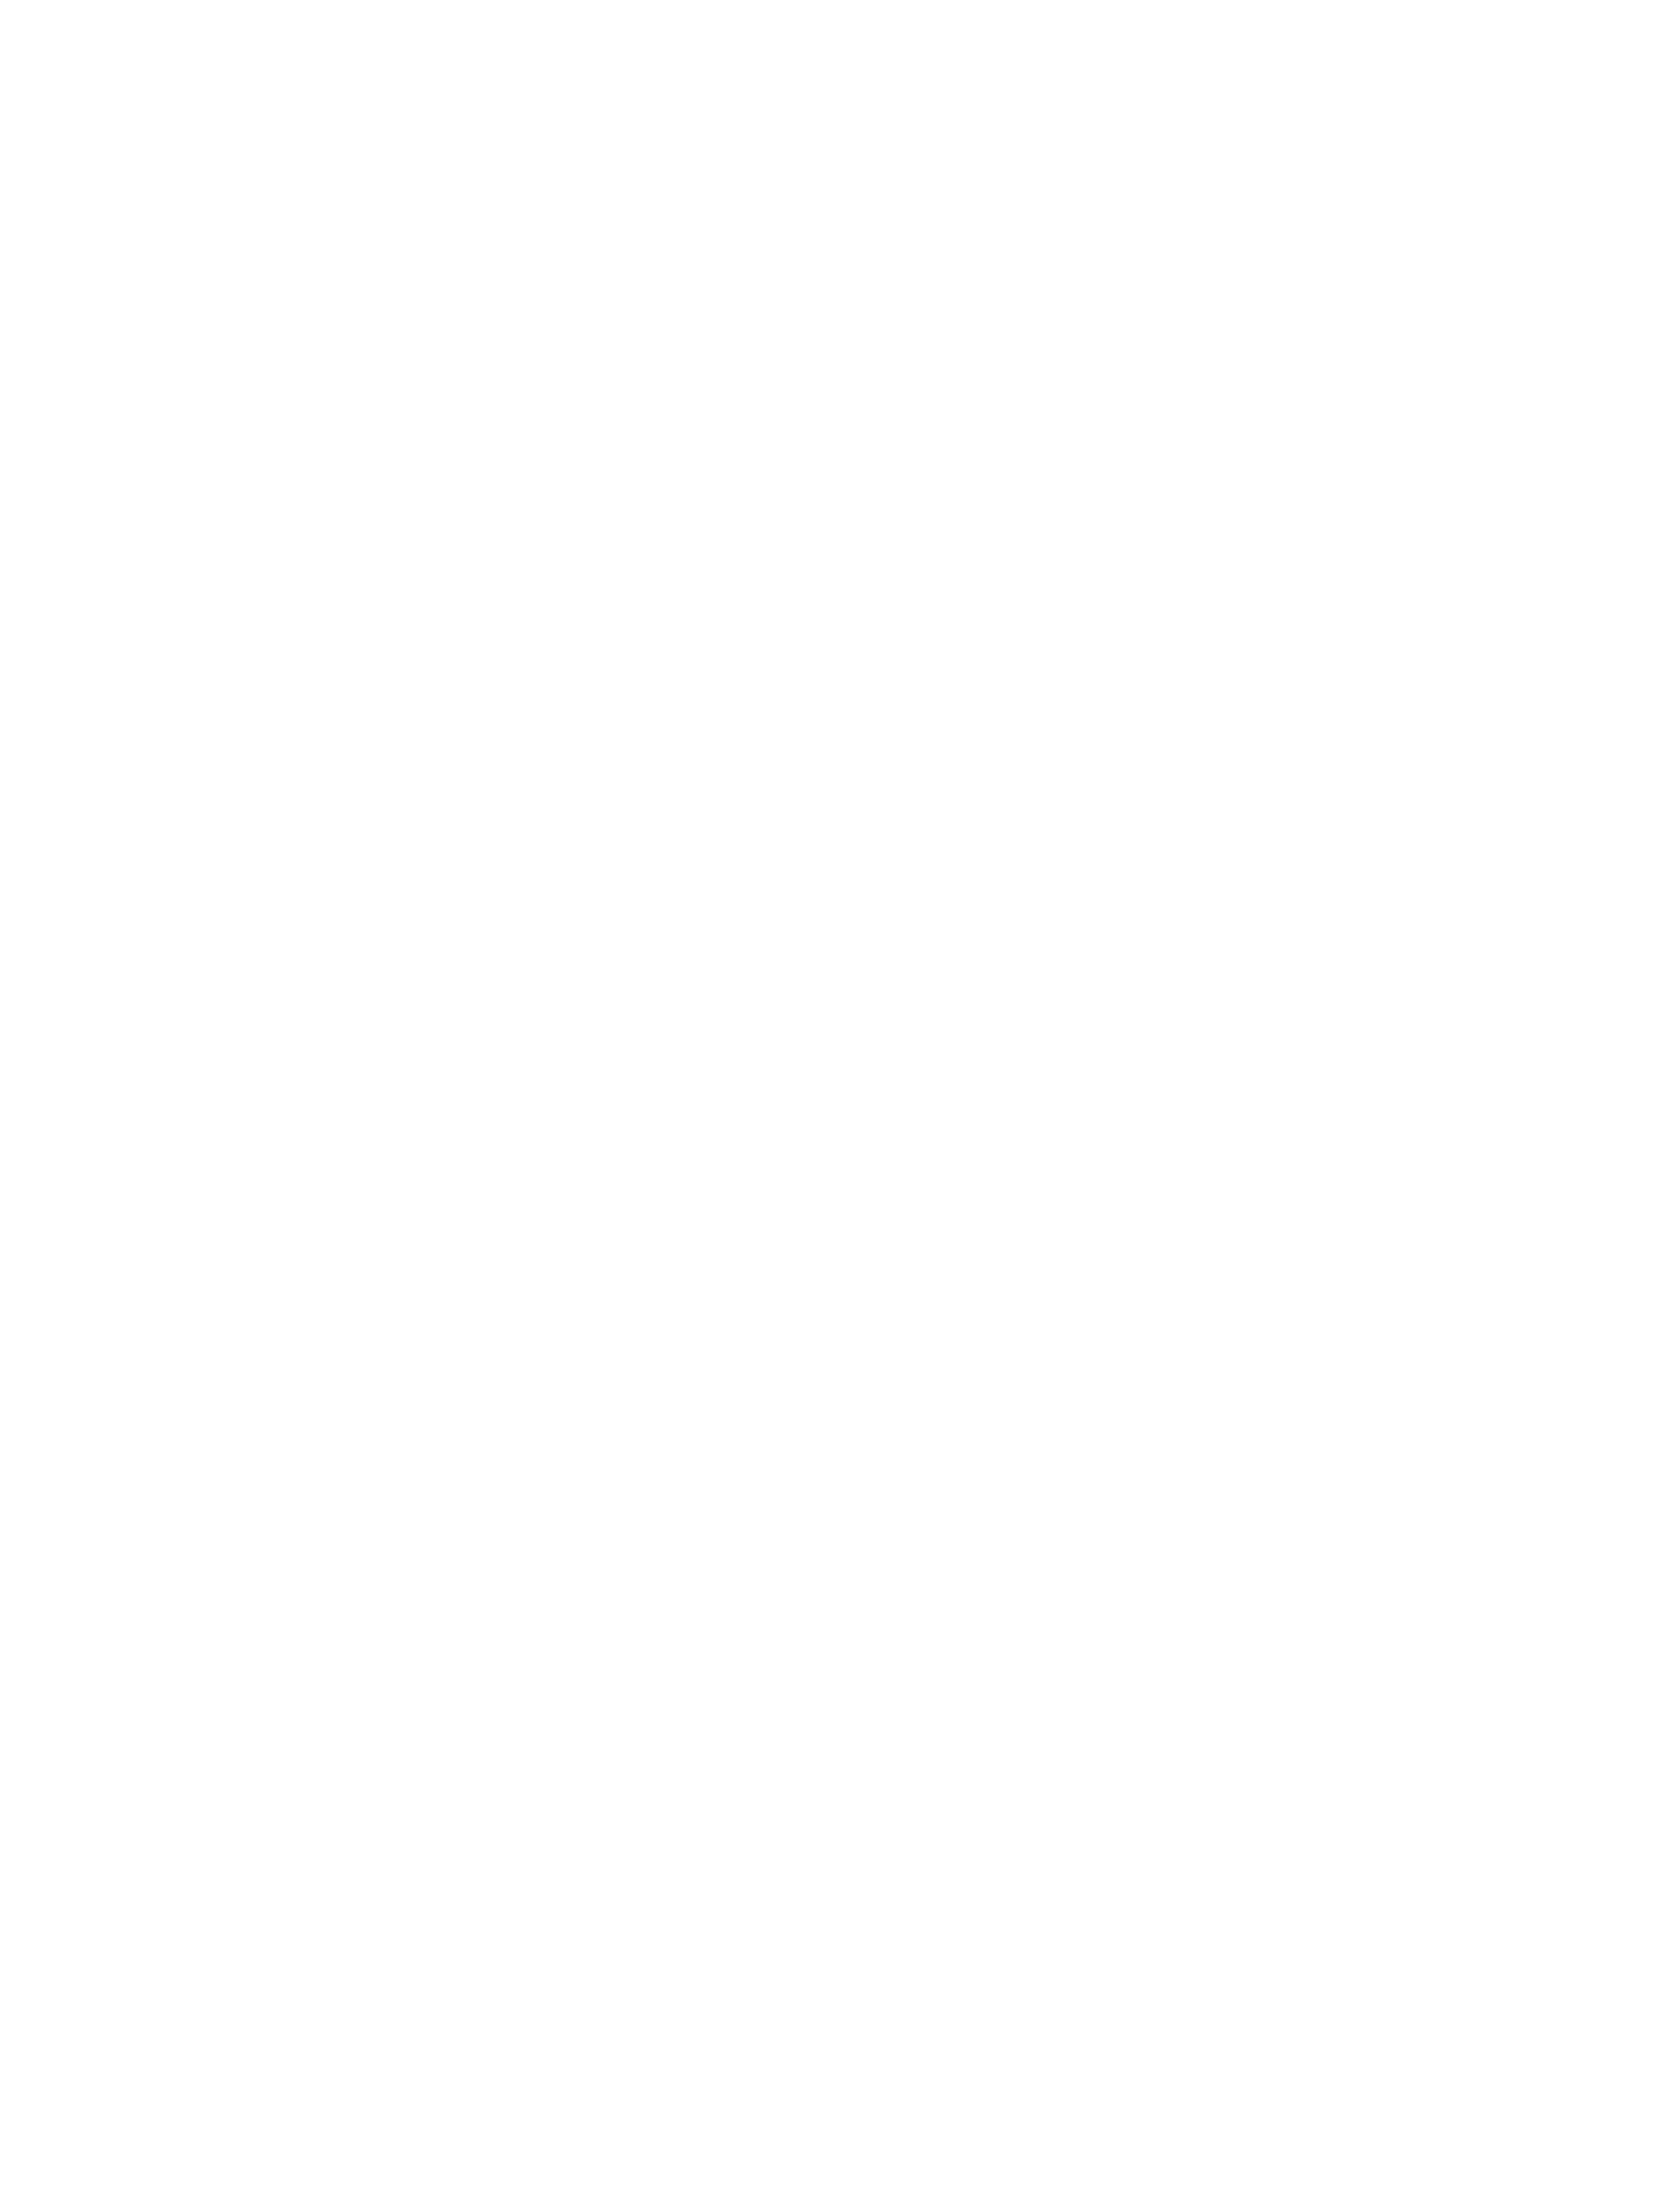 ASQ Award